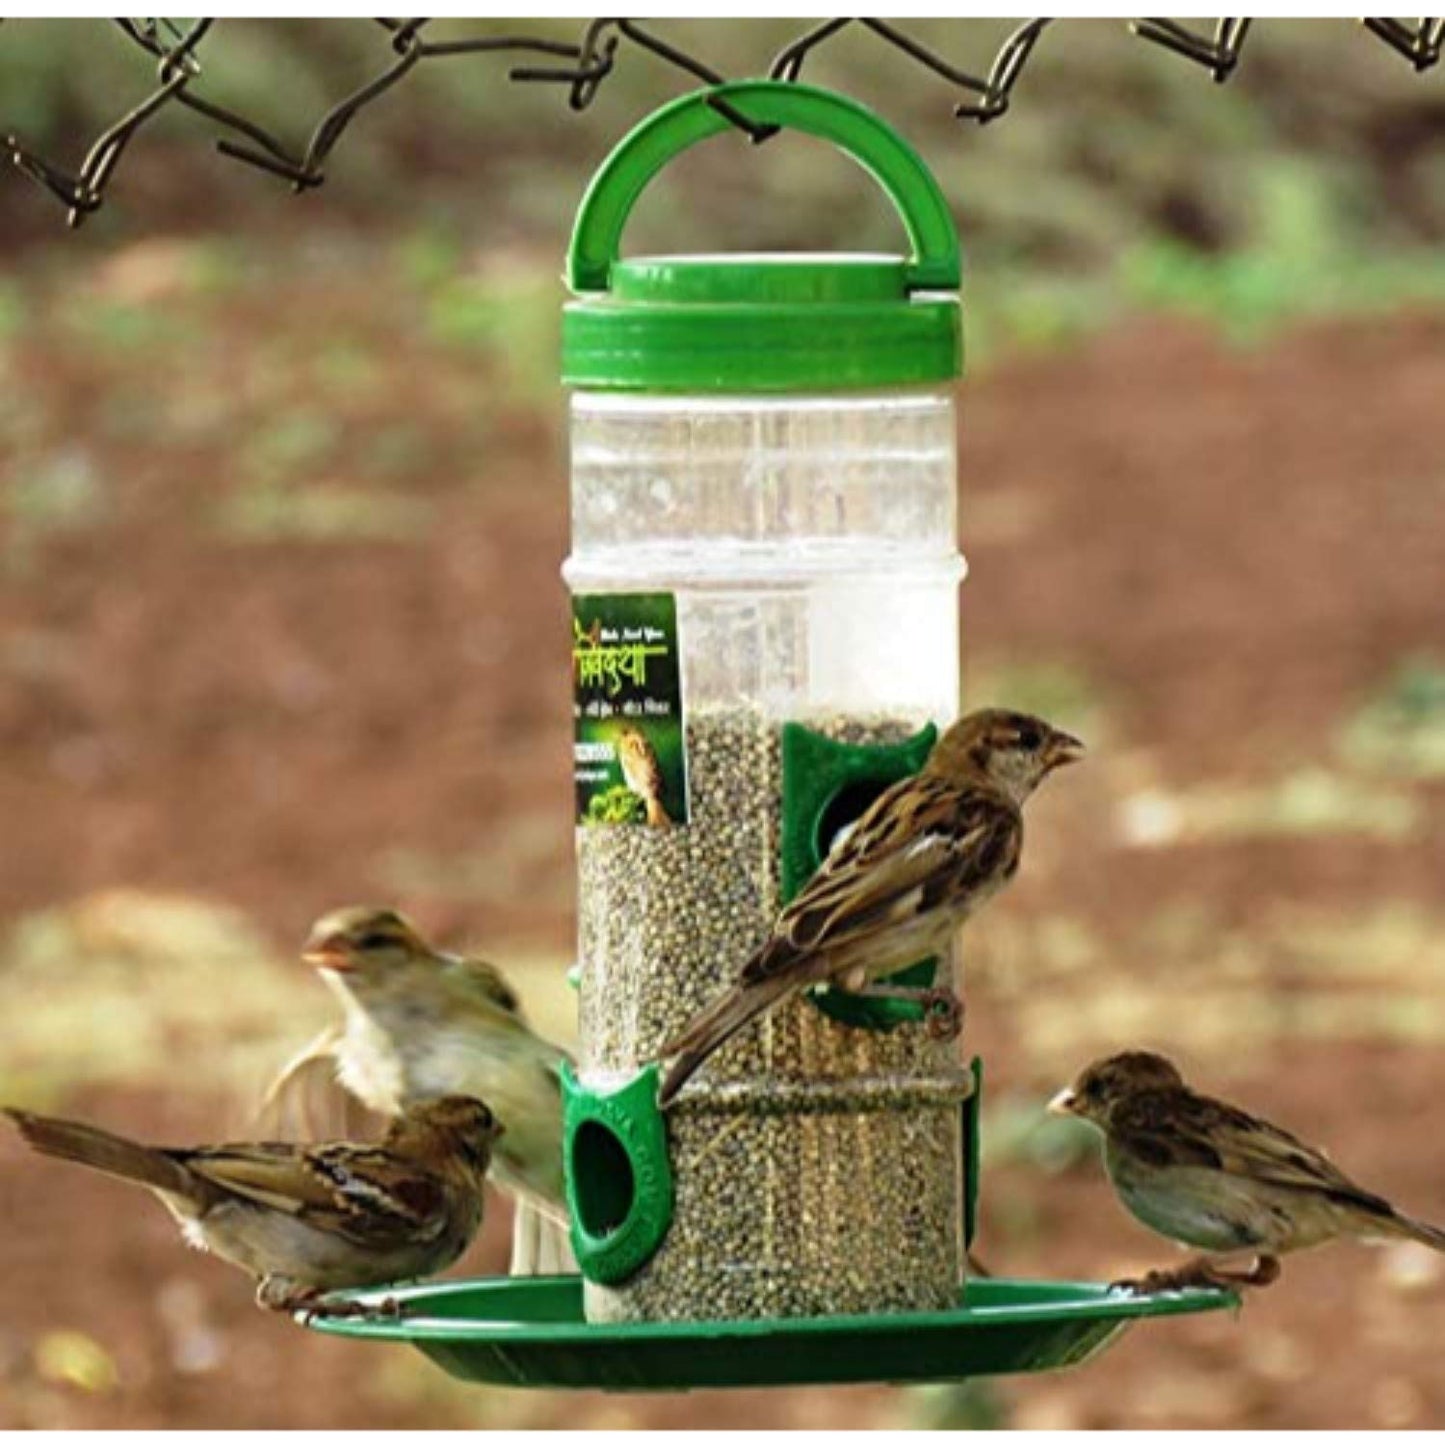 Amijivdaya Bird Feeder With Hut (Large)- Pack of 2